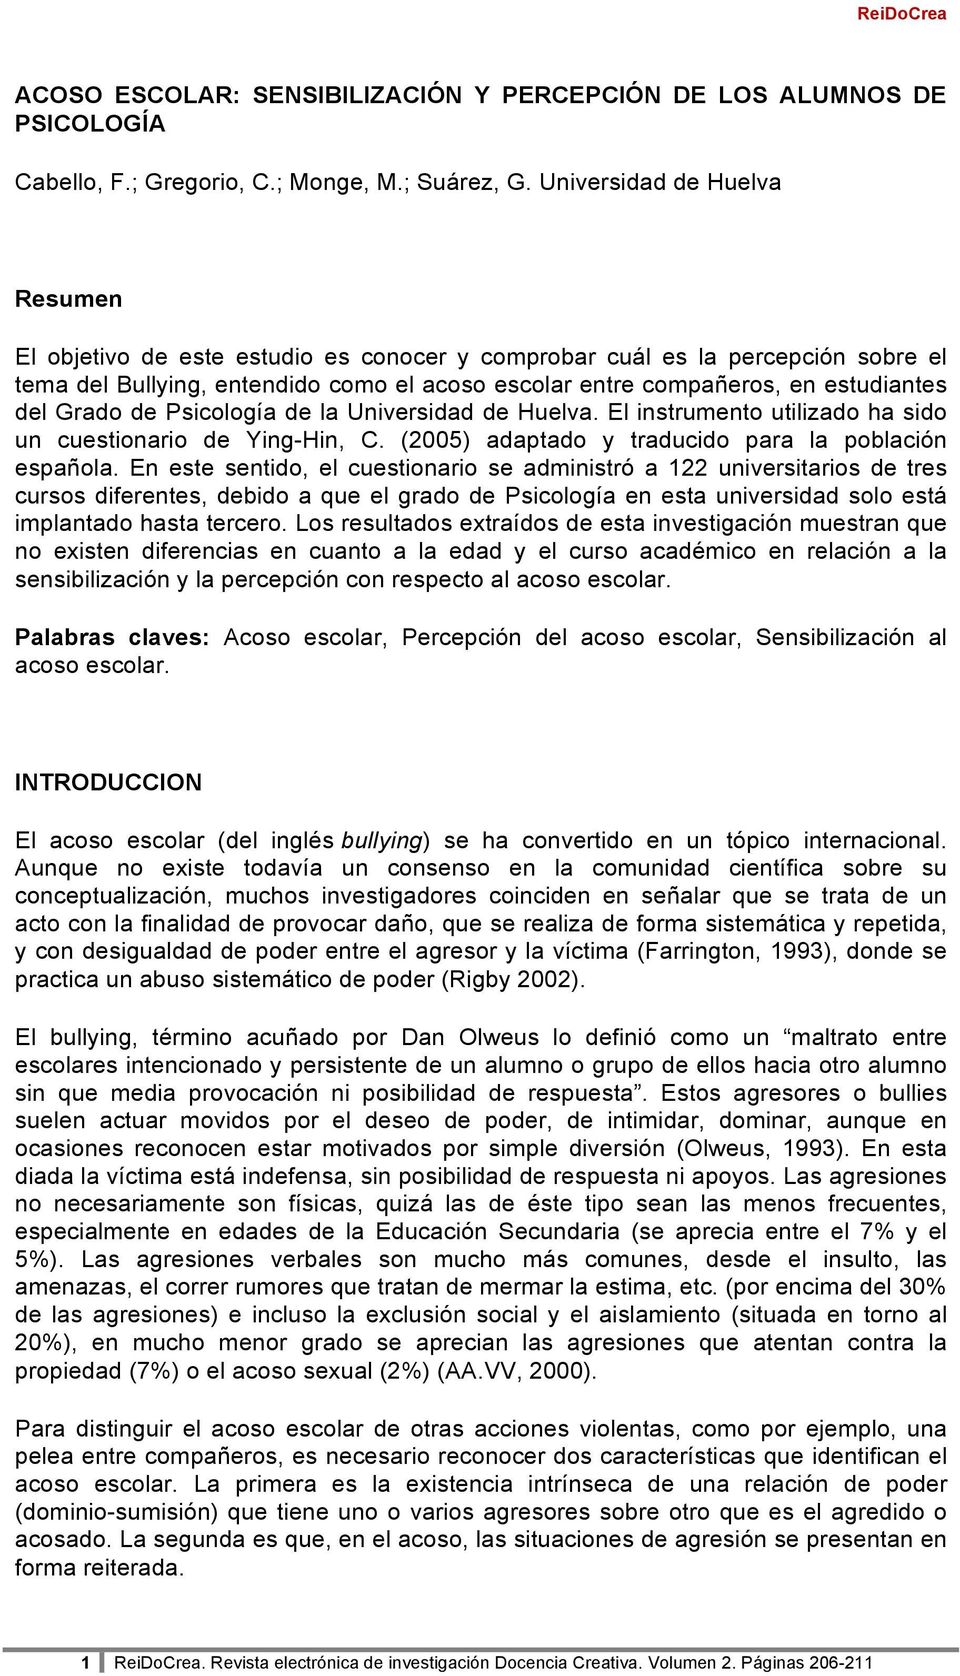 Grado de Psicología de la Universidad de Huelva. El instrumento utilizado ha sido un cuestionario de Ying-Hin, C. (2005) adaptado y traducido para la población española.